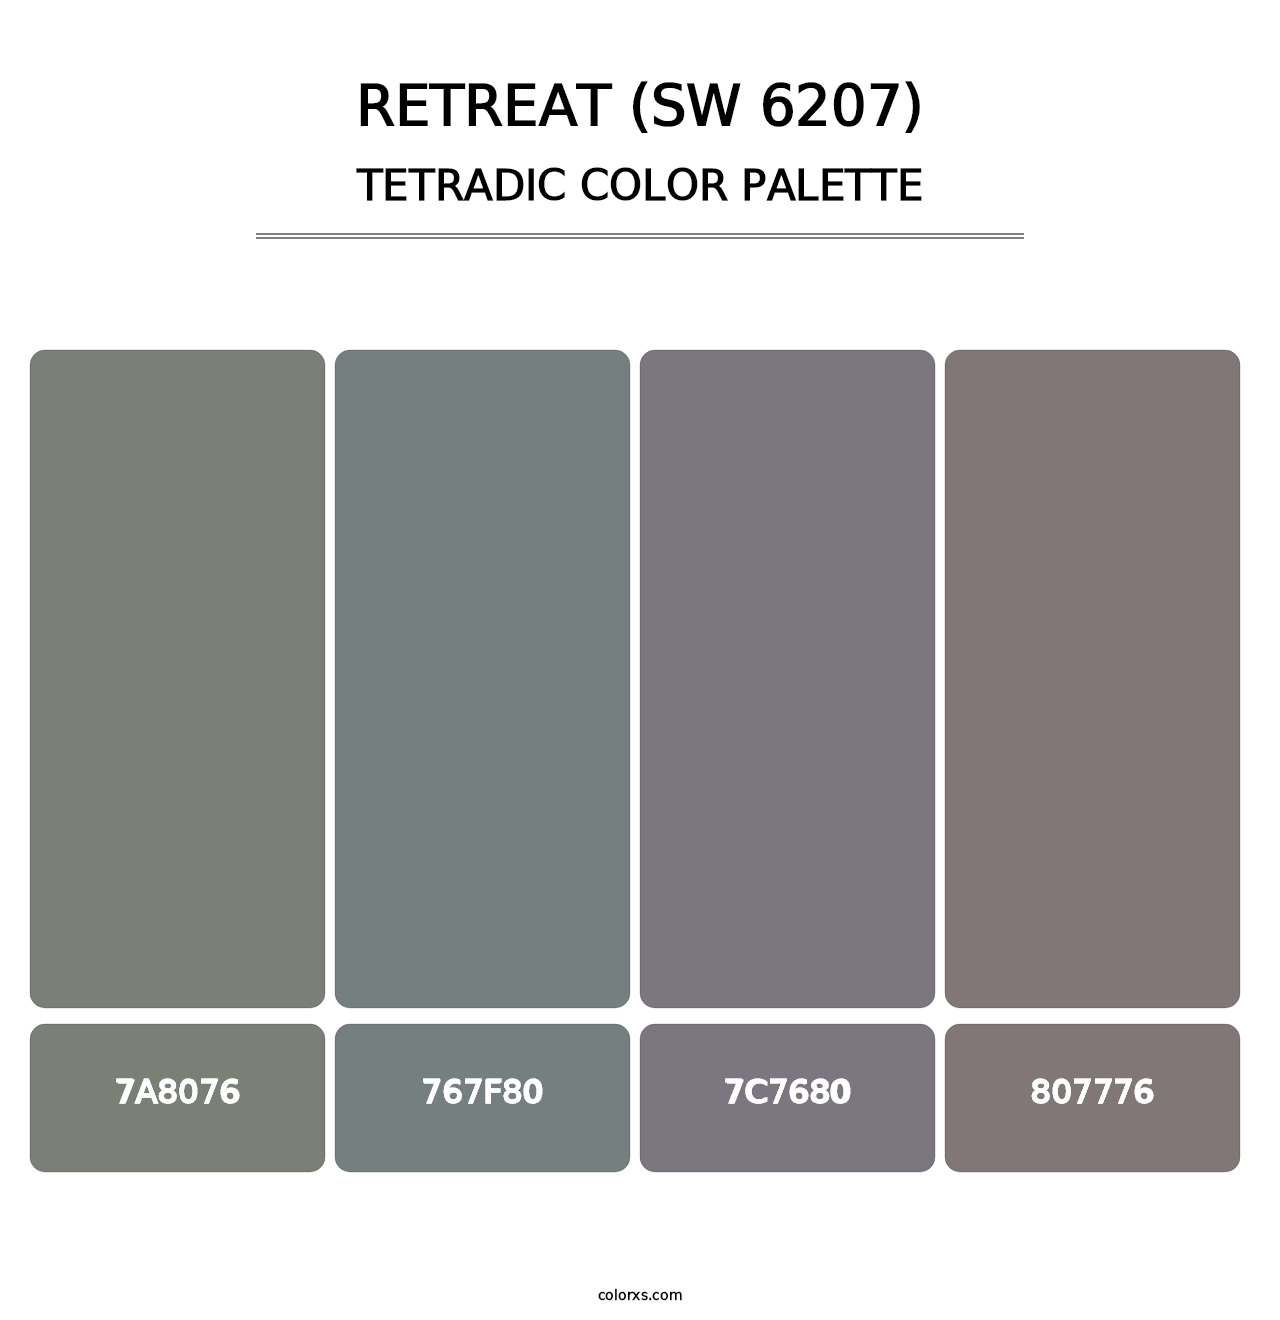 Retreat (SW 6207) - Tetradic Color Palette